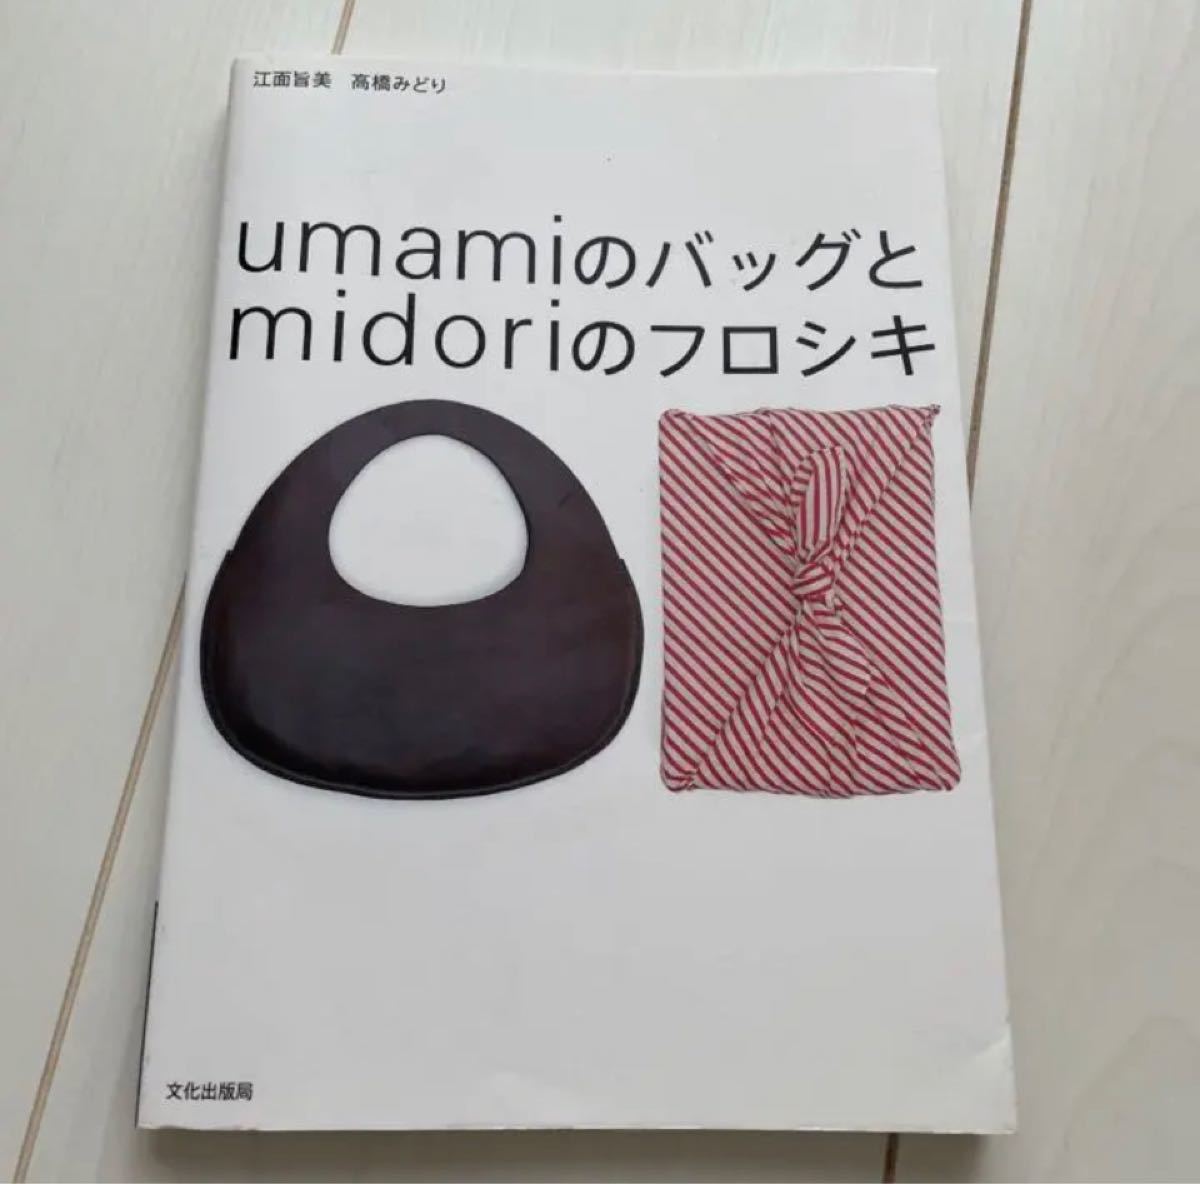 本「Umamiのバッグとmidoriのフロシキ」